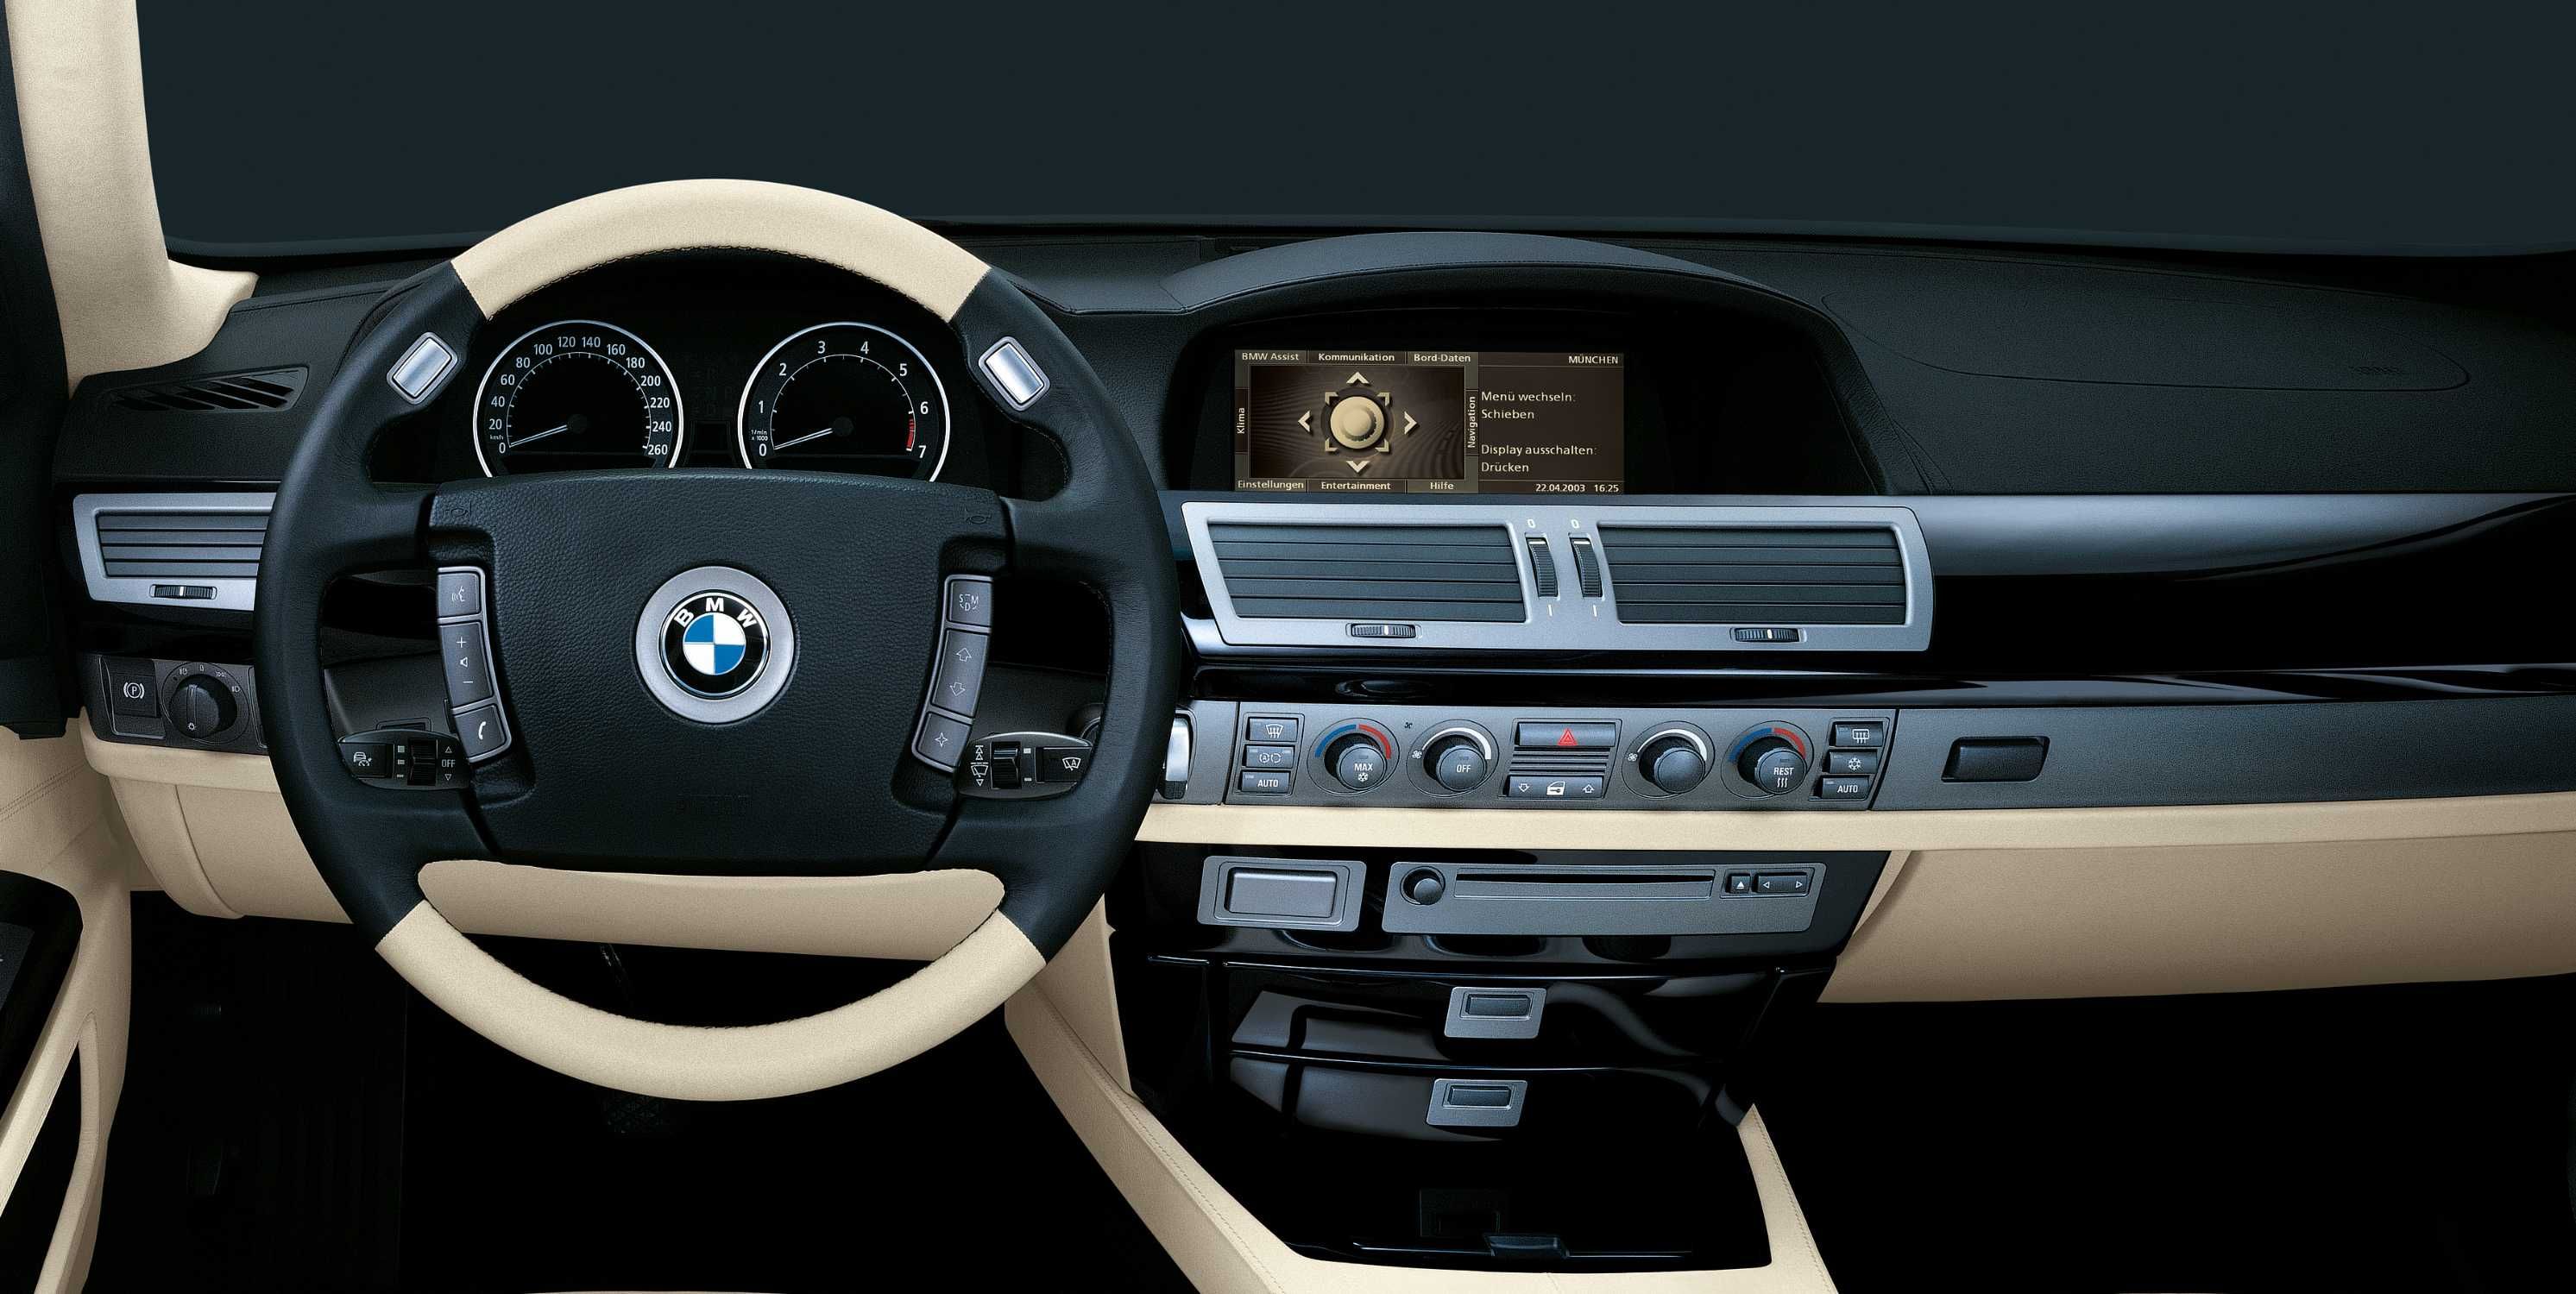 BMW E65/E66 interiores